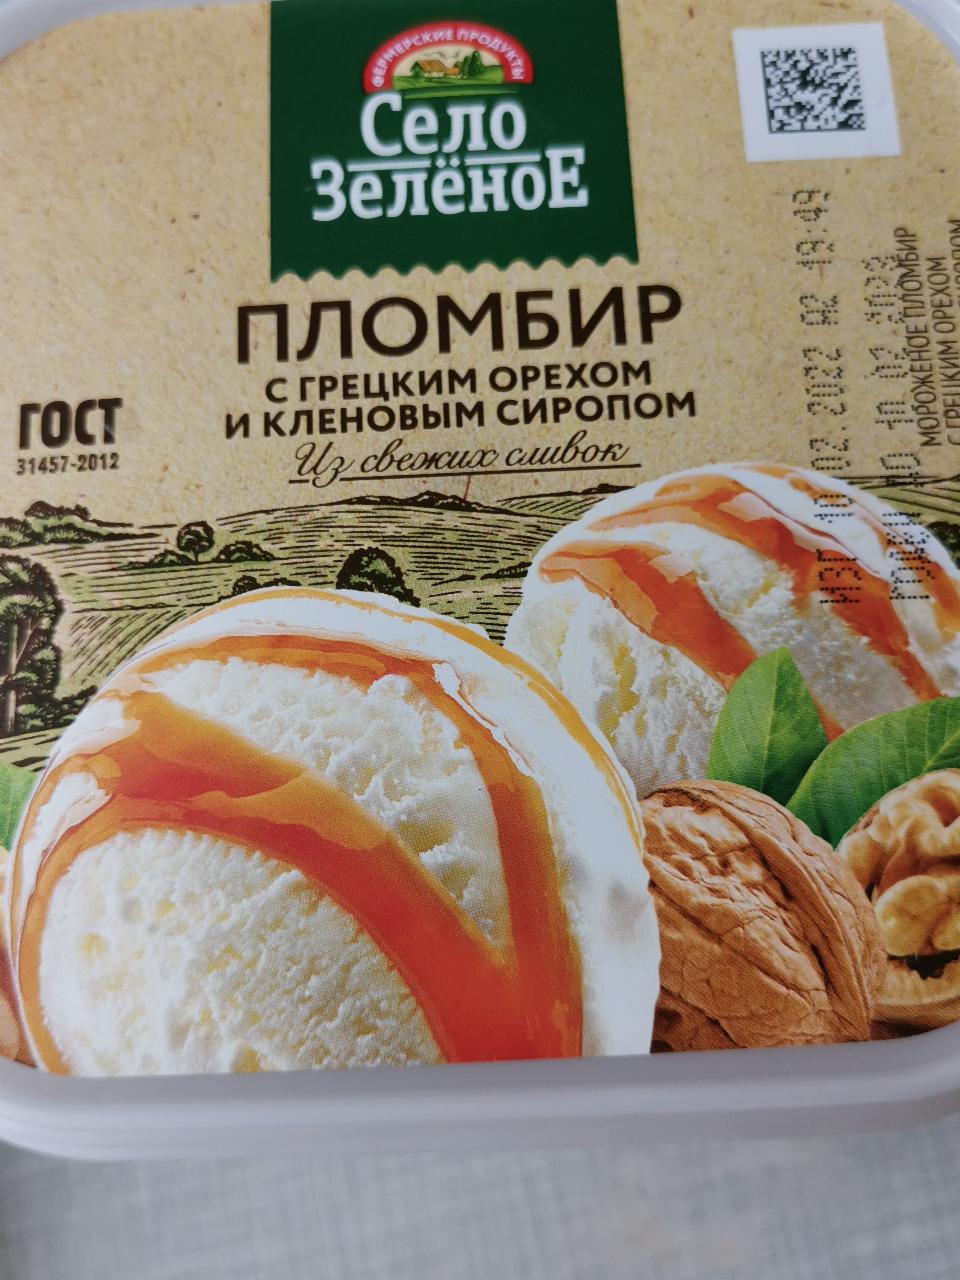 Фото - Мороженое пломбир с грецким орехом и кленовый сиропом Село Зелёное